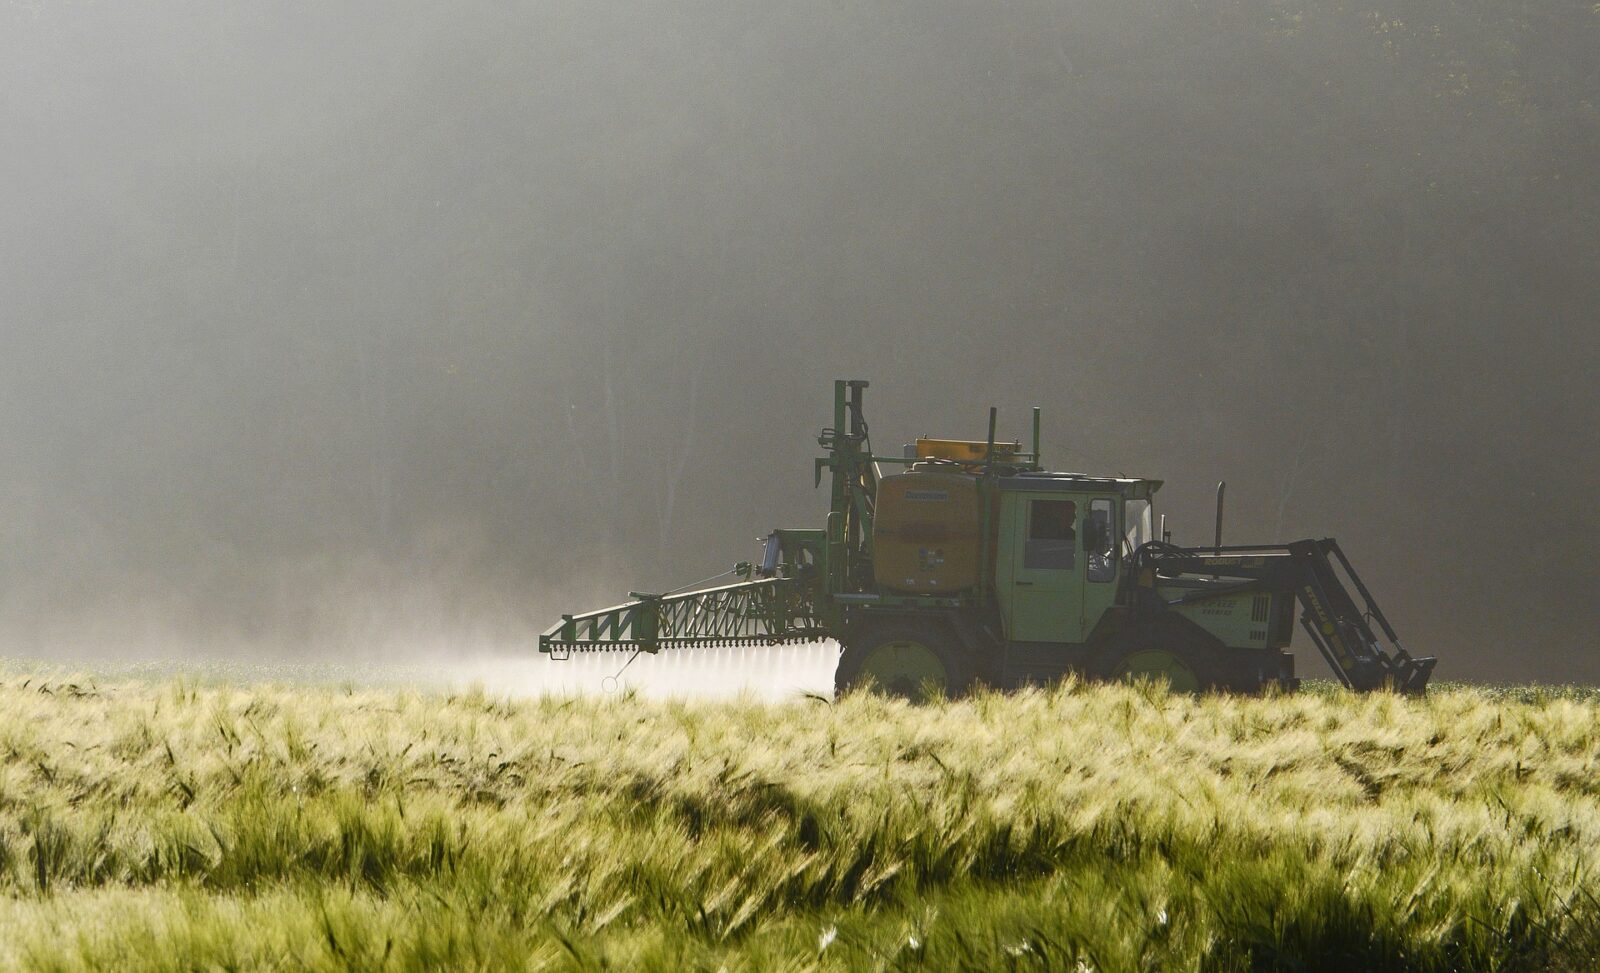 Obawy dotyczące reformy statystyk pestycydów w Europie